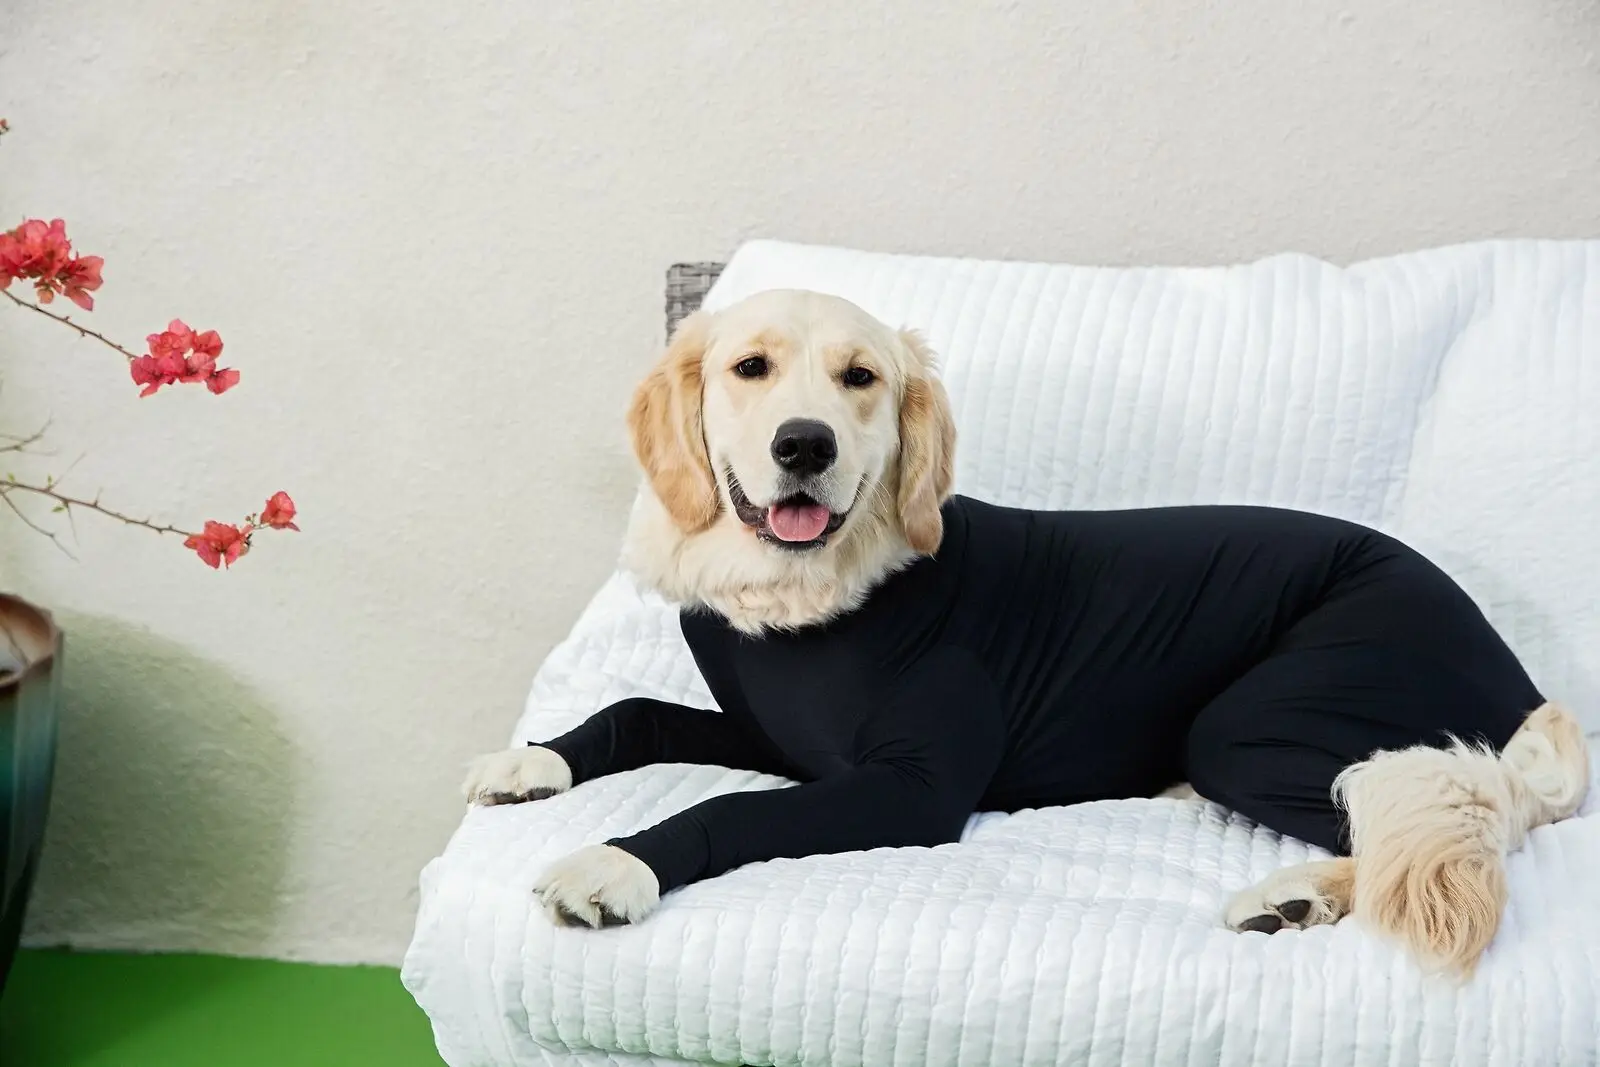 Комбинезон "собака" Груминг содержит стрижку собачьих волос уменьшить тревожность заменить медицинский конус одежда для маленькой собаки черная собачья куртка